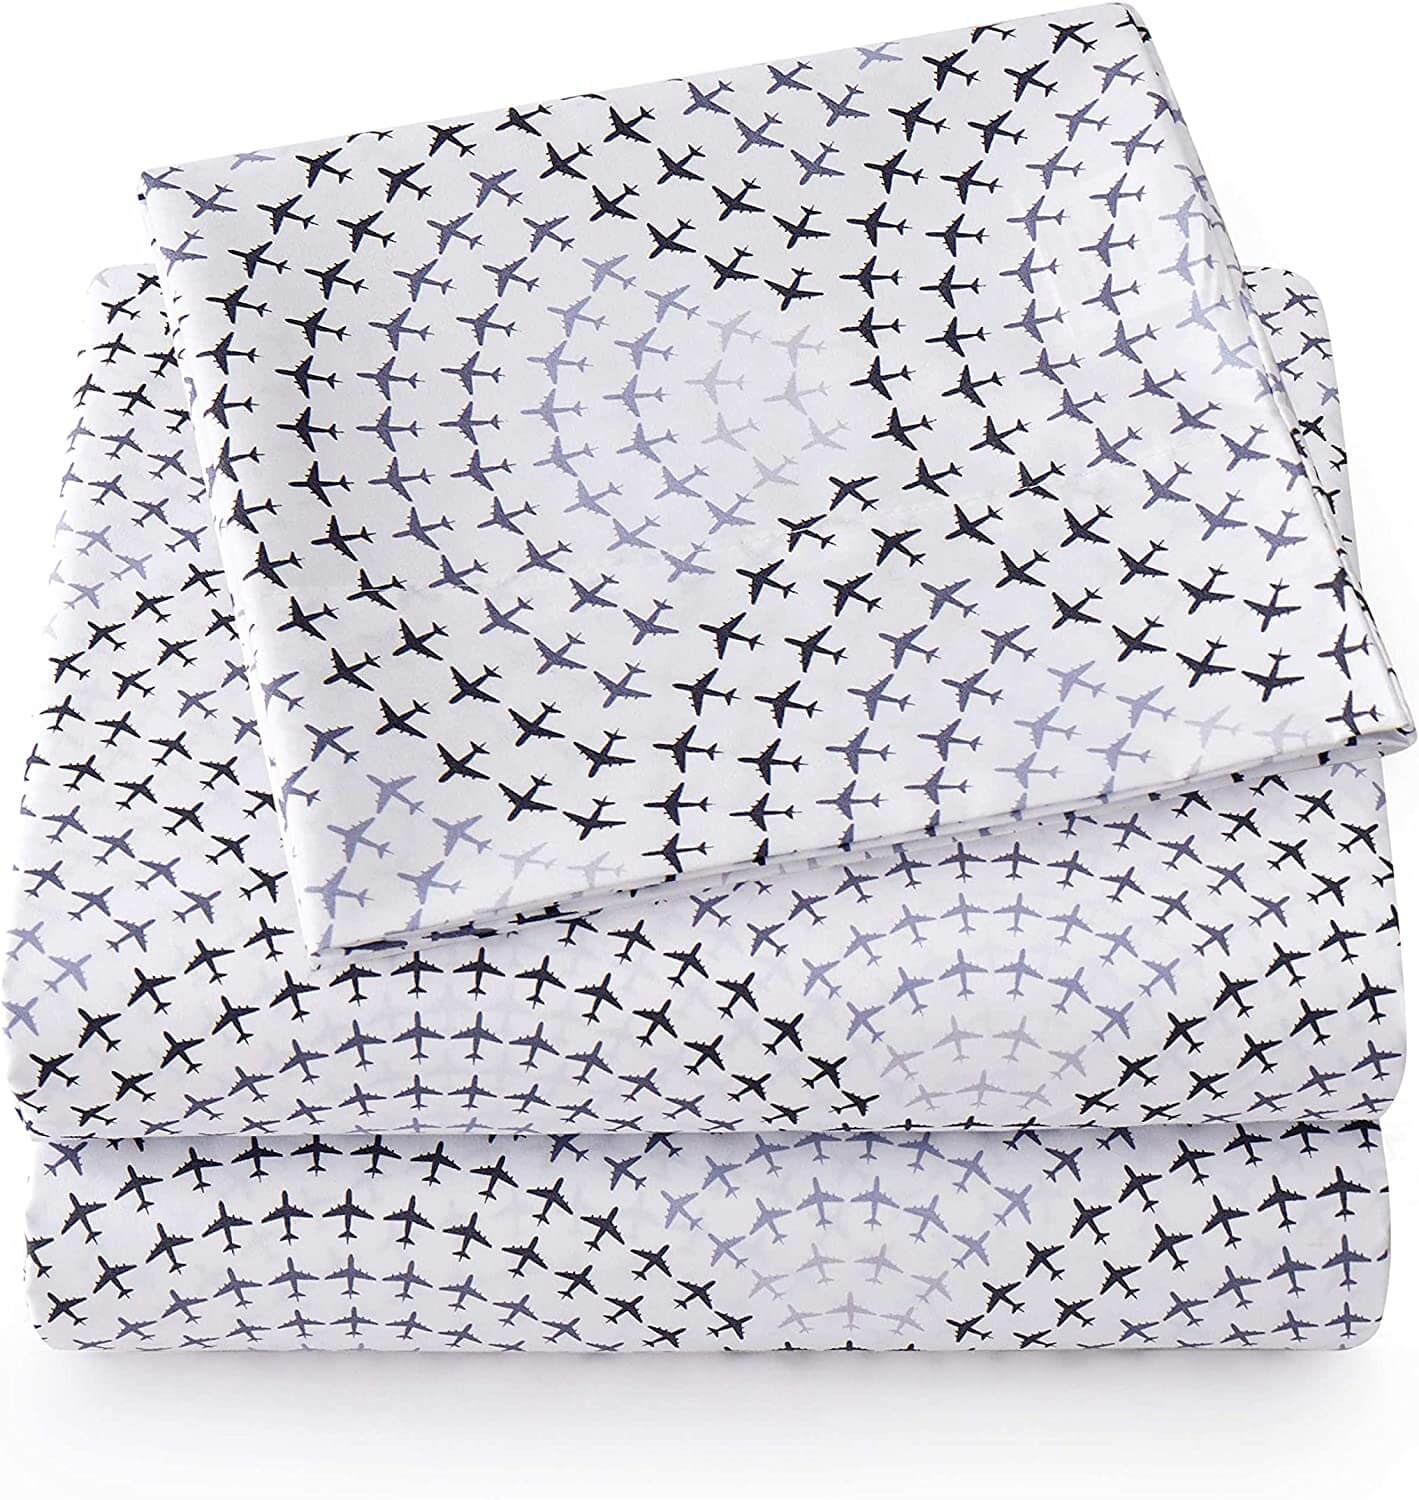 цена Комплект постельного белья Sweet Home Collection Cozy Bedding, 4 предмета, белый/серый